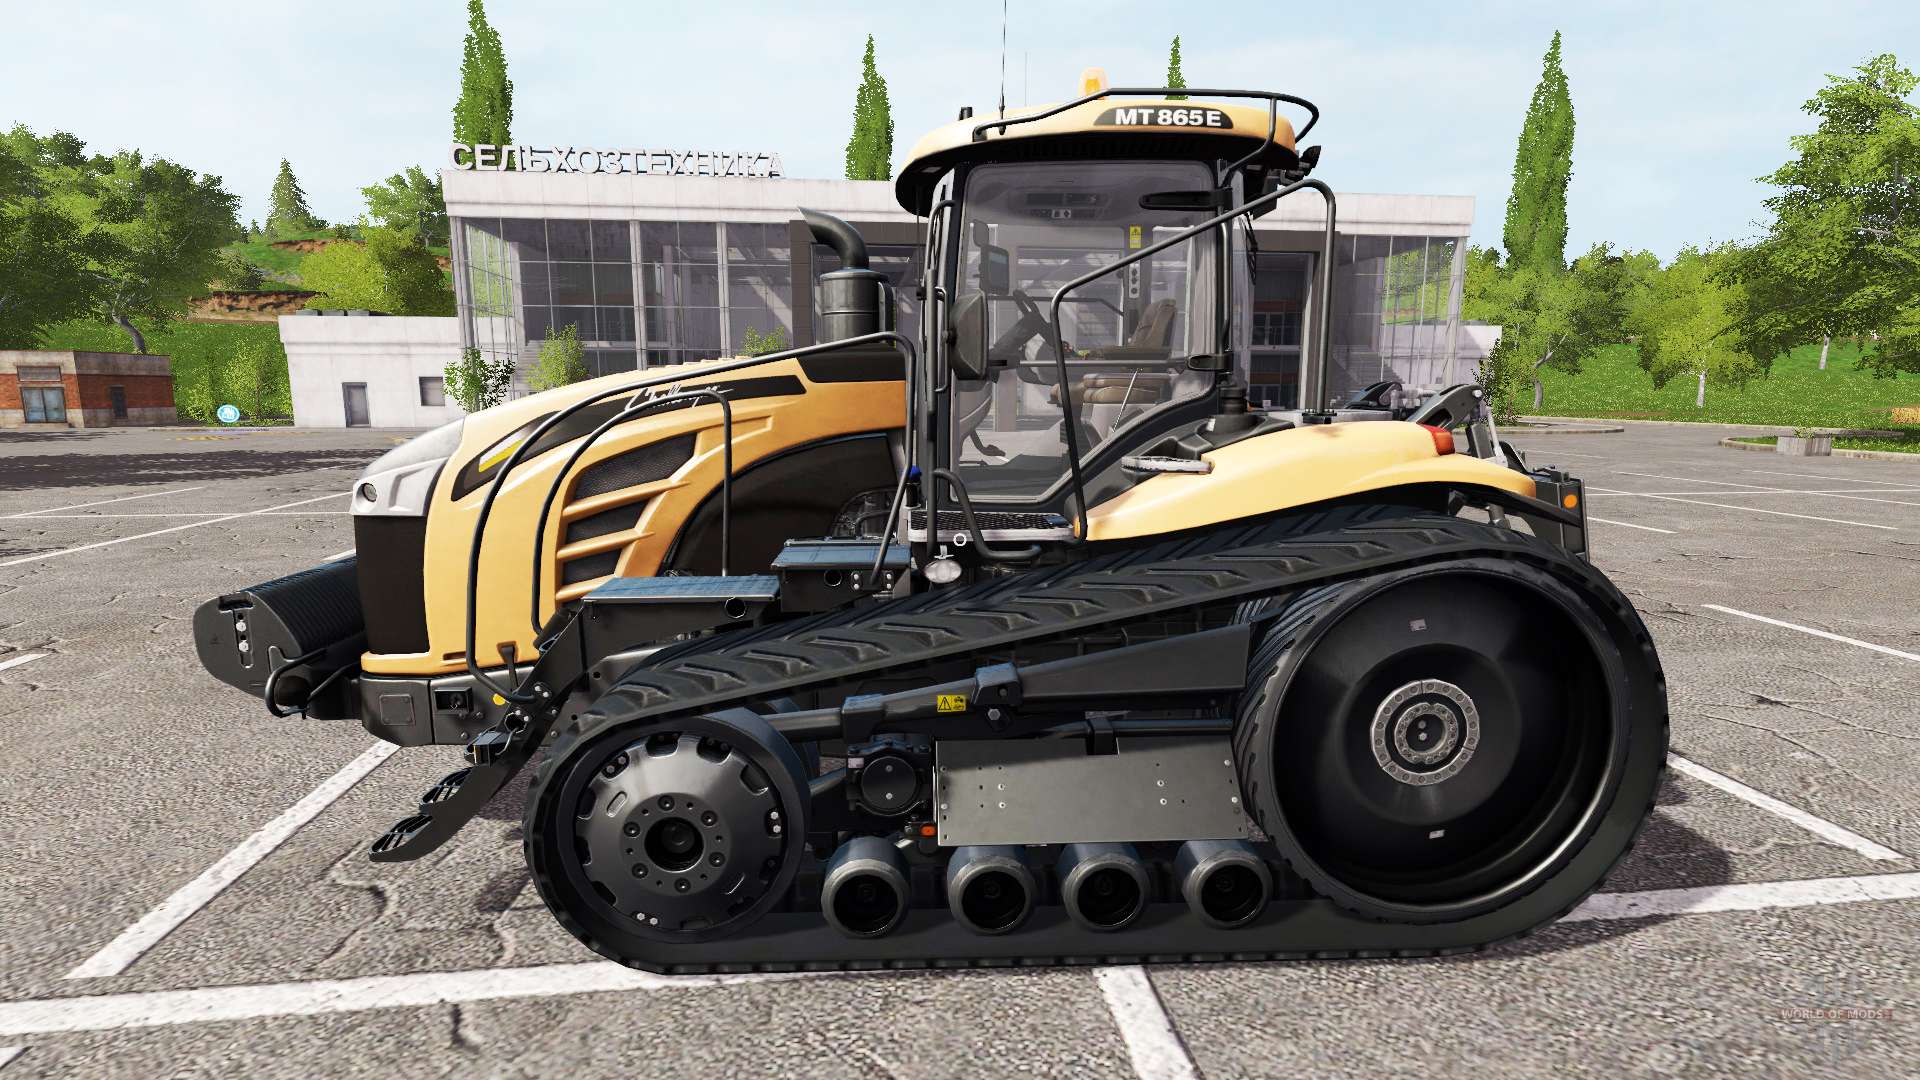 Модельный ряд тракторов челленджер (challenger) – особенности и комплектация